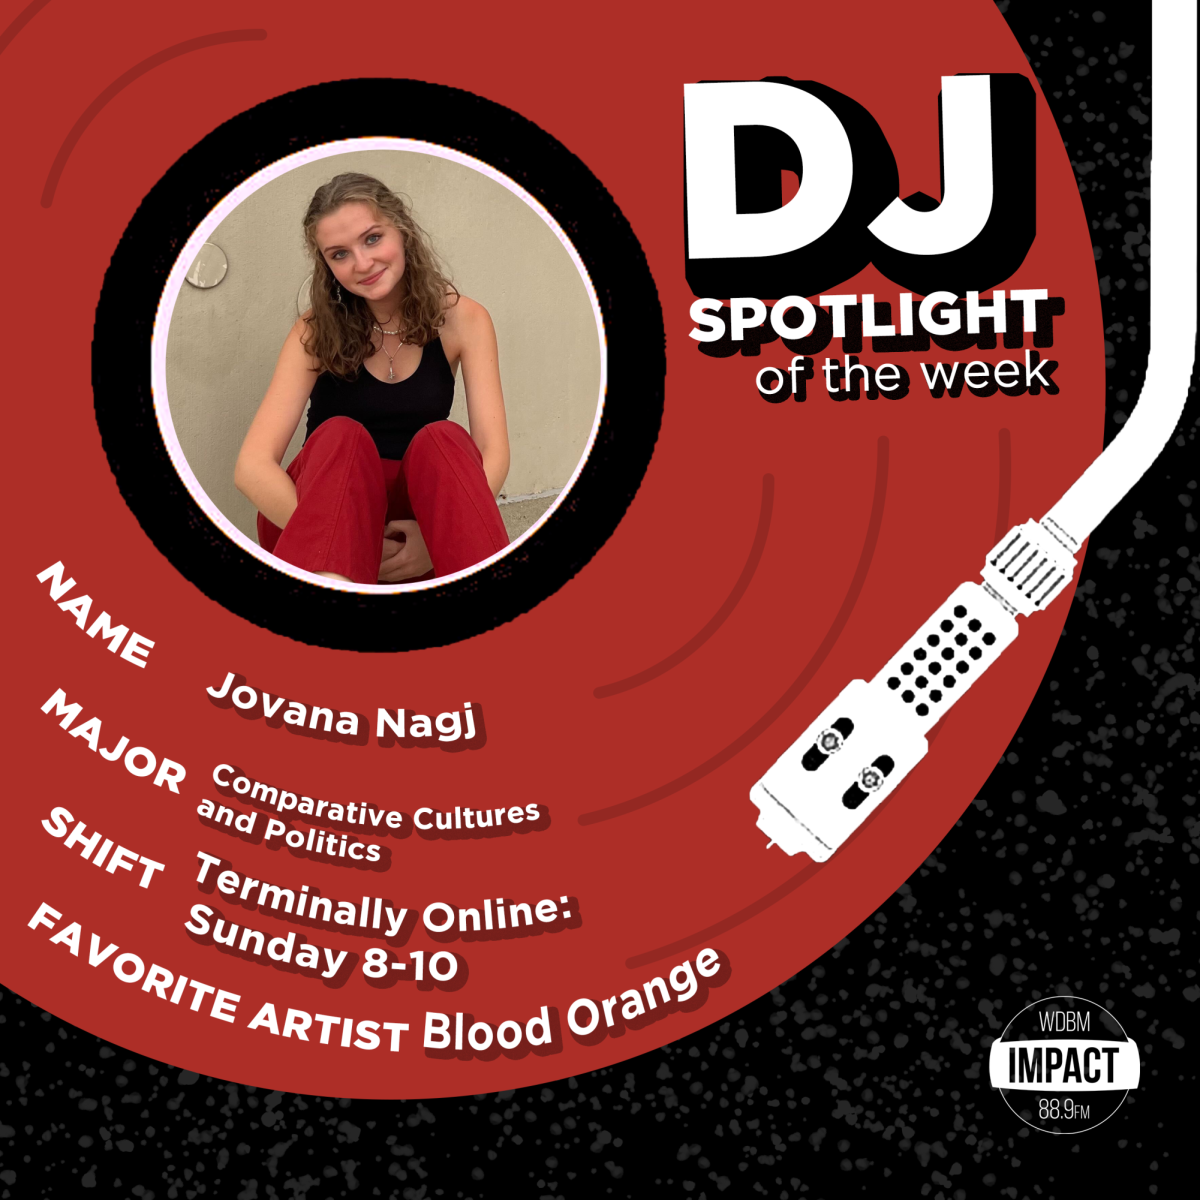 DJ Spotlight of the Week: Jovana Nagj